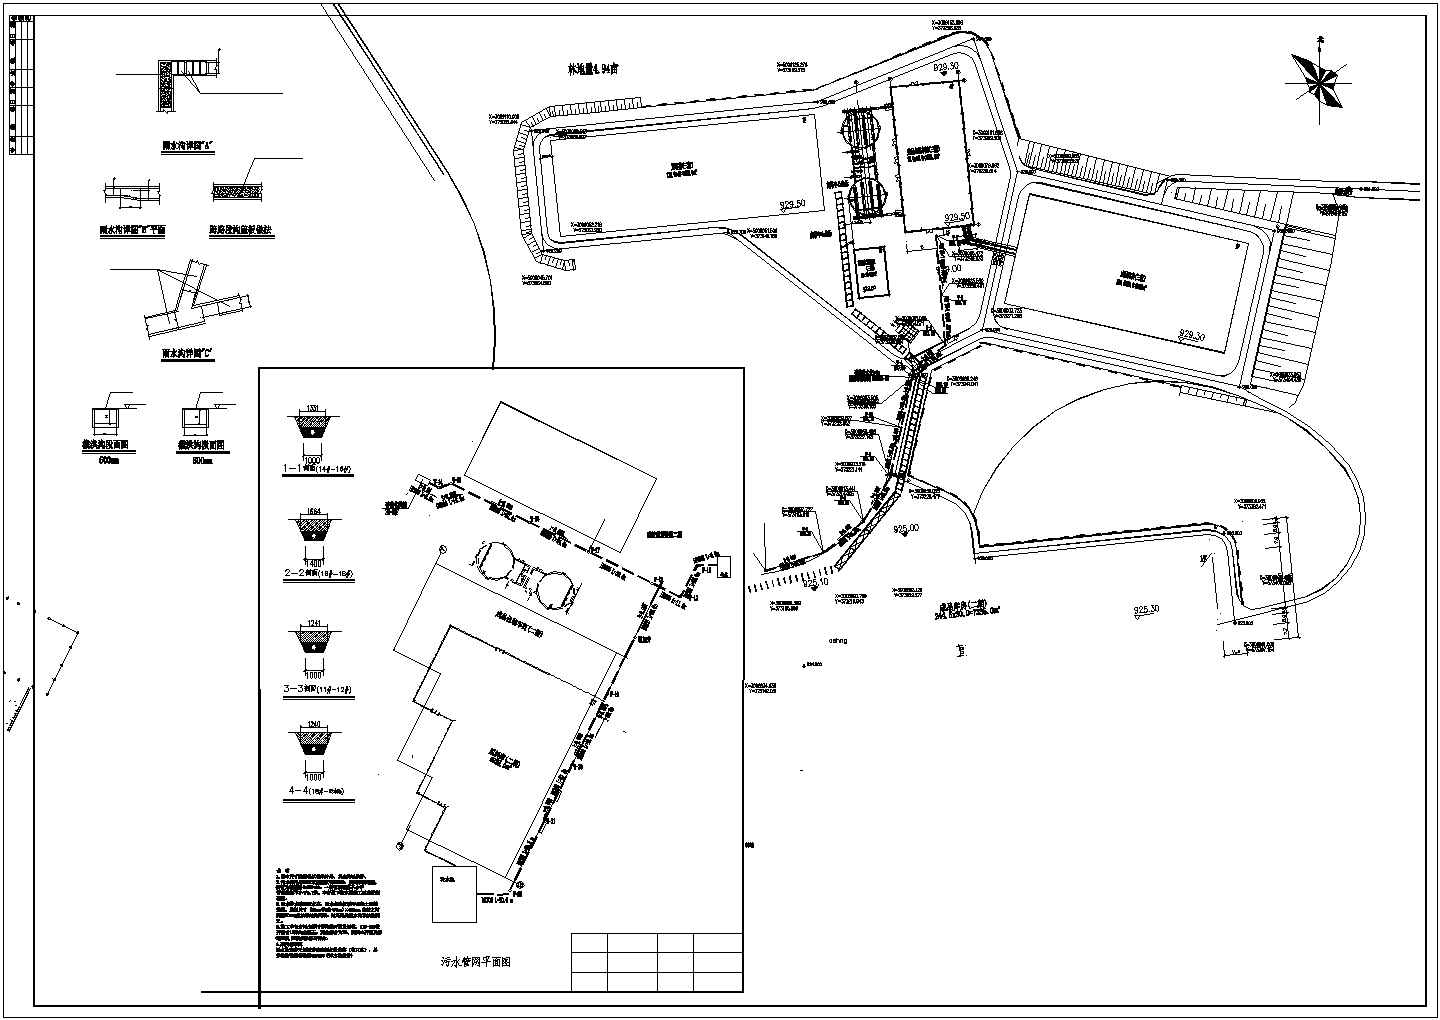 硝基复合肥厂区污水排水管网设计图